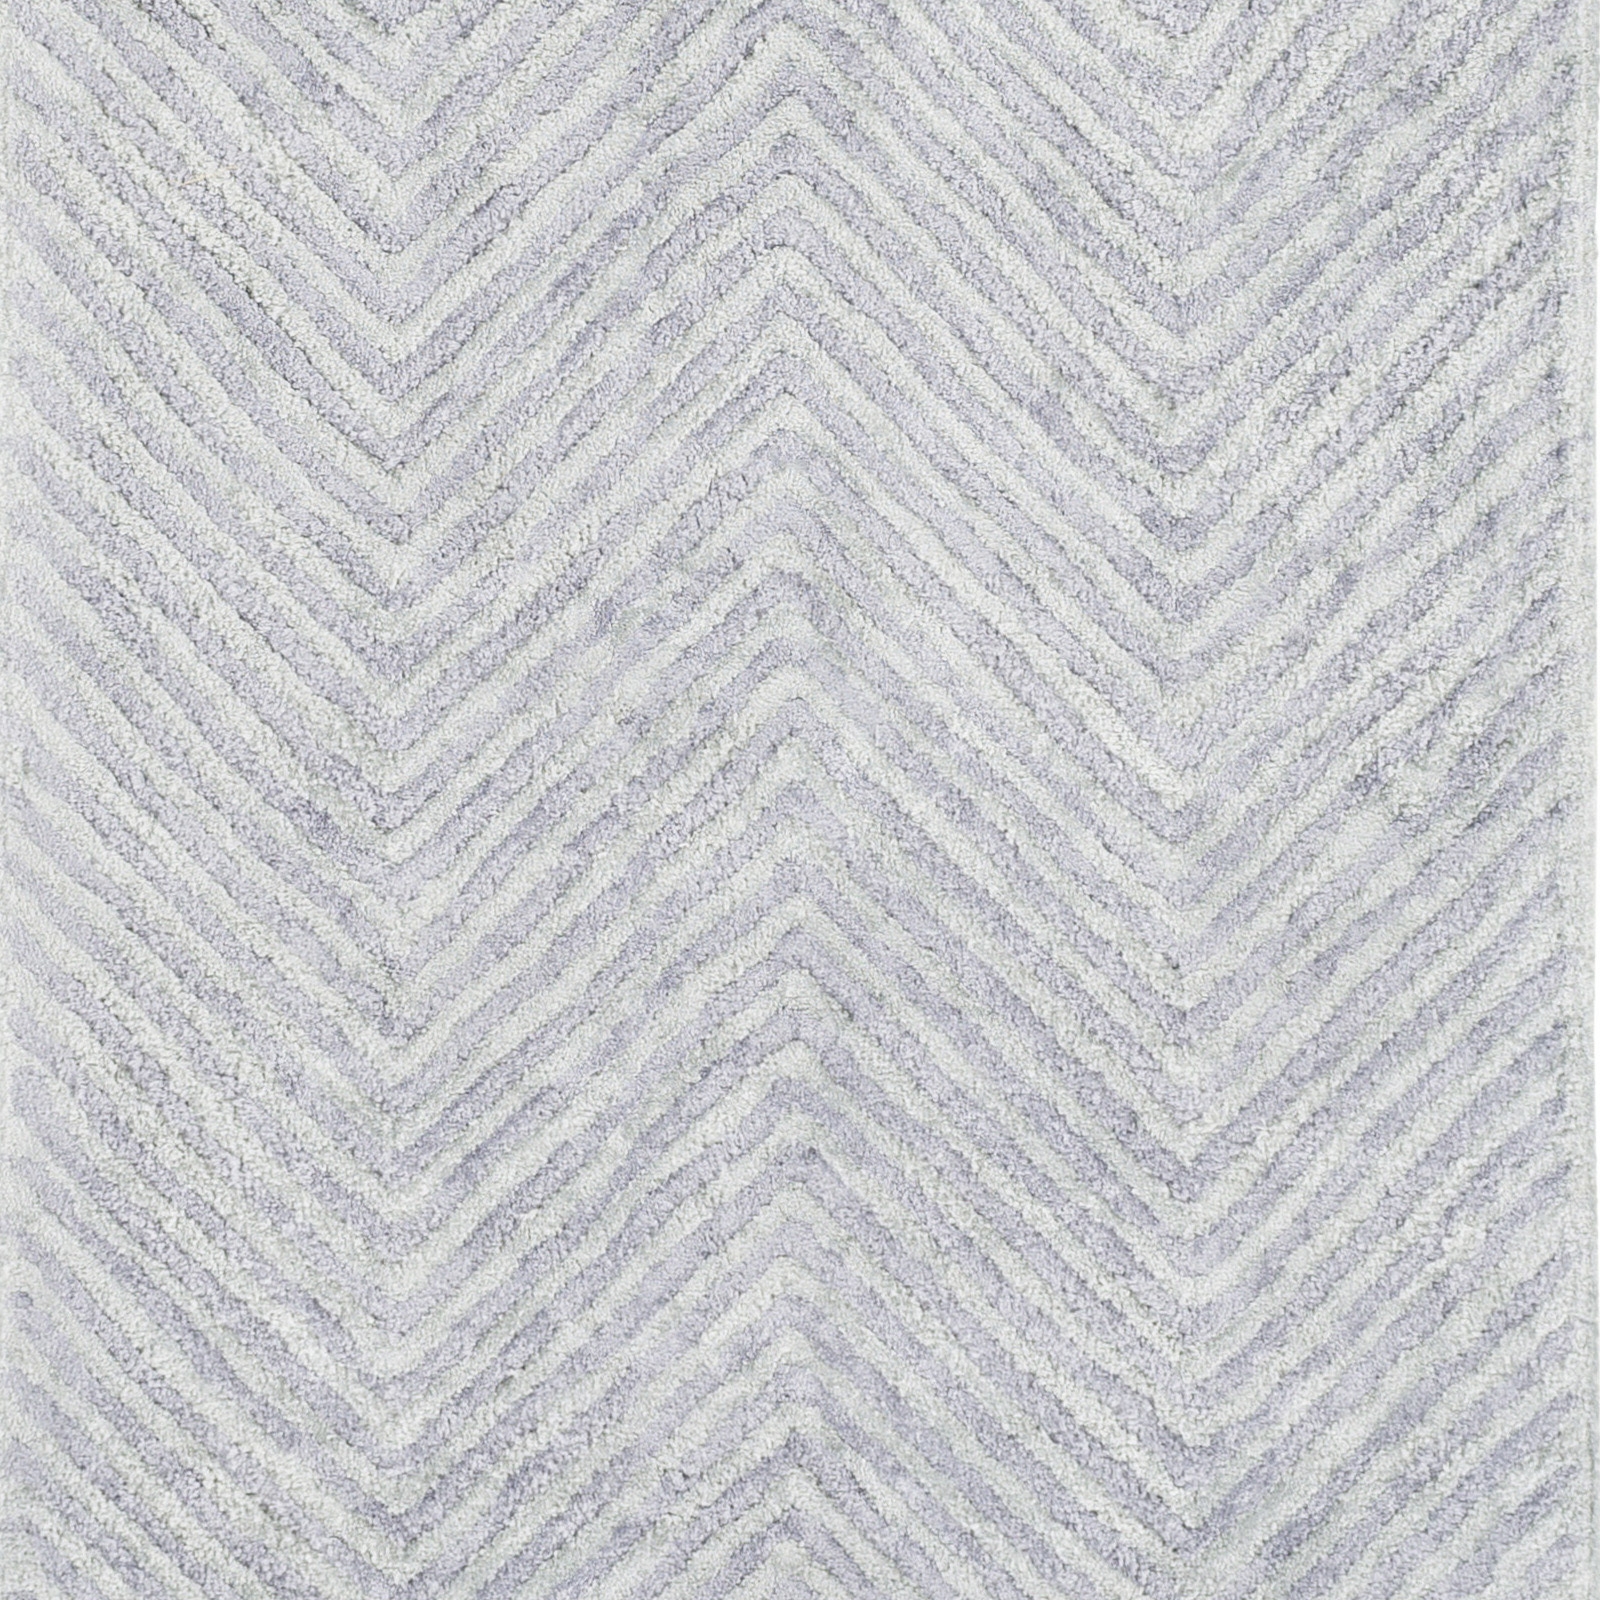 Quartz 6' x 9' Area Rug - Image 1